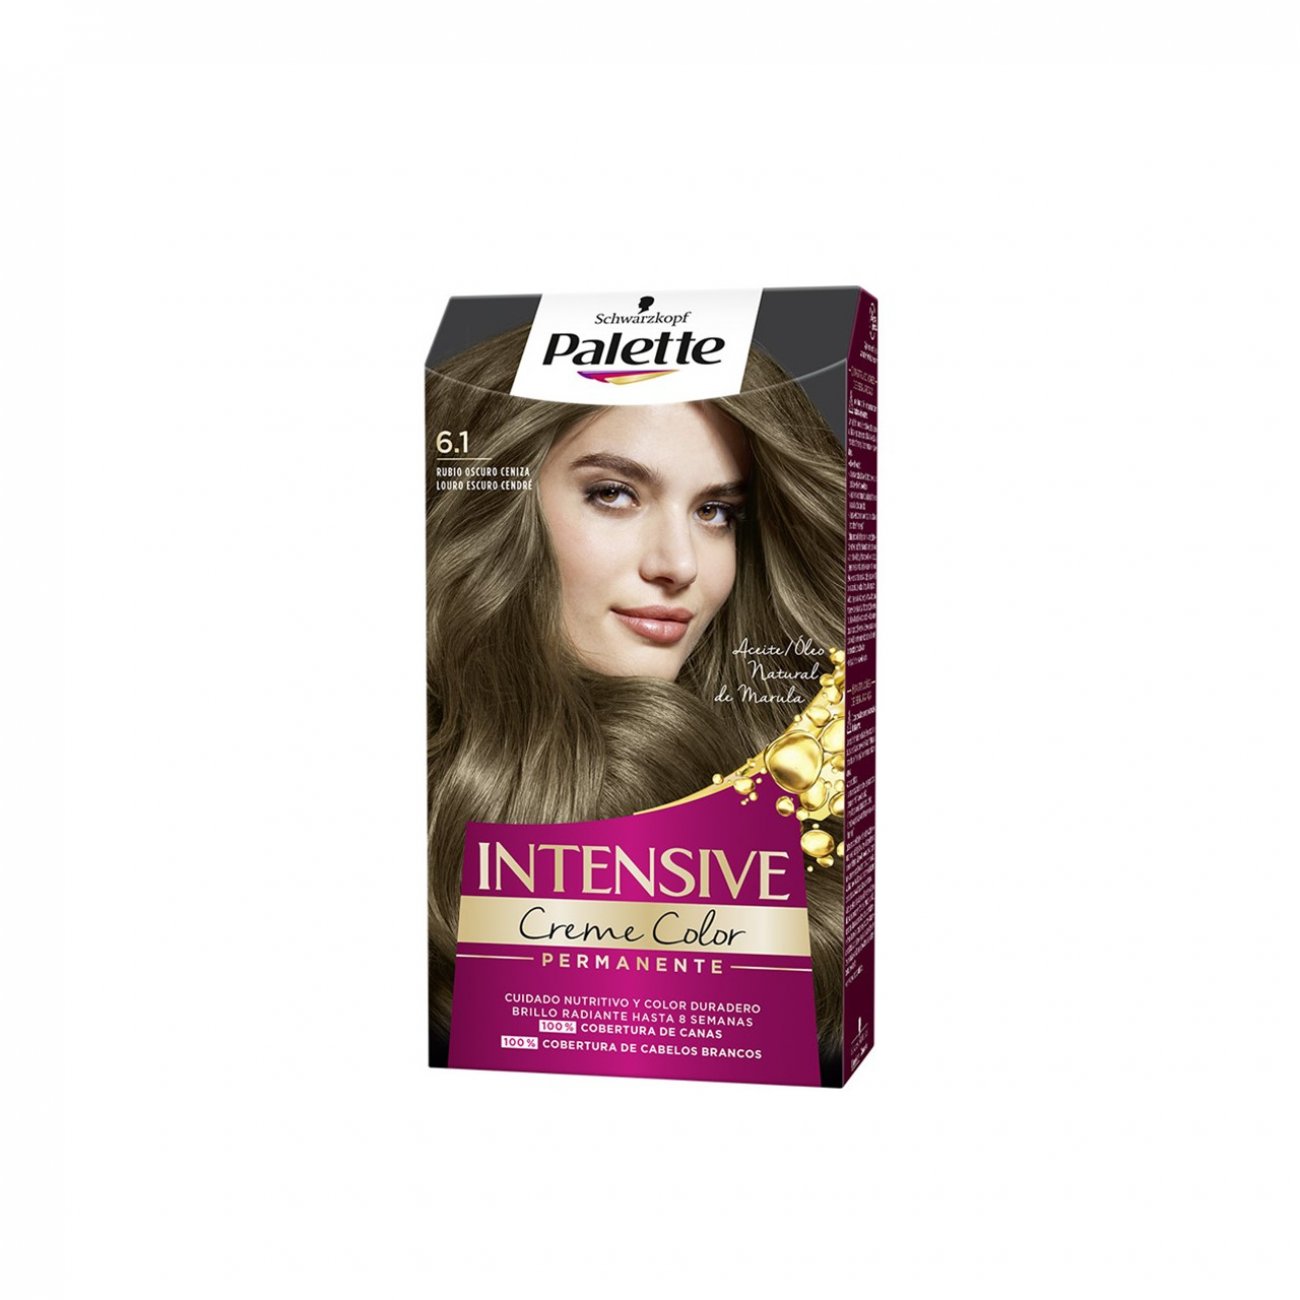 Buy Schwarzkopf Palette Intensive Creme Color Permanent Hair Dye 6.1 Ashy Blonde · USA